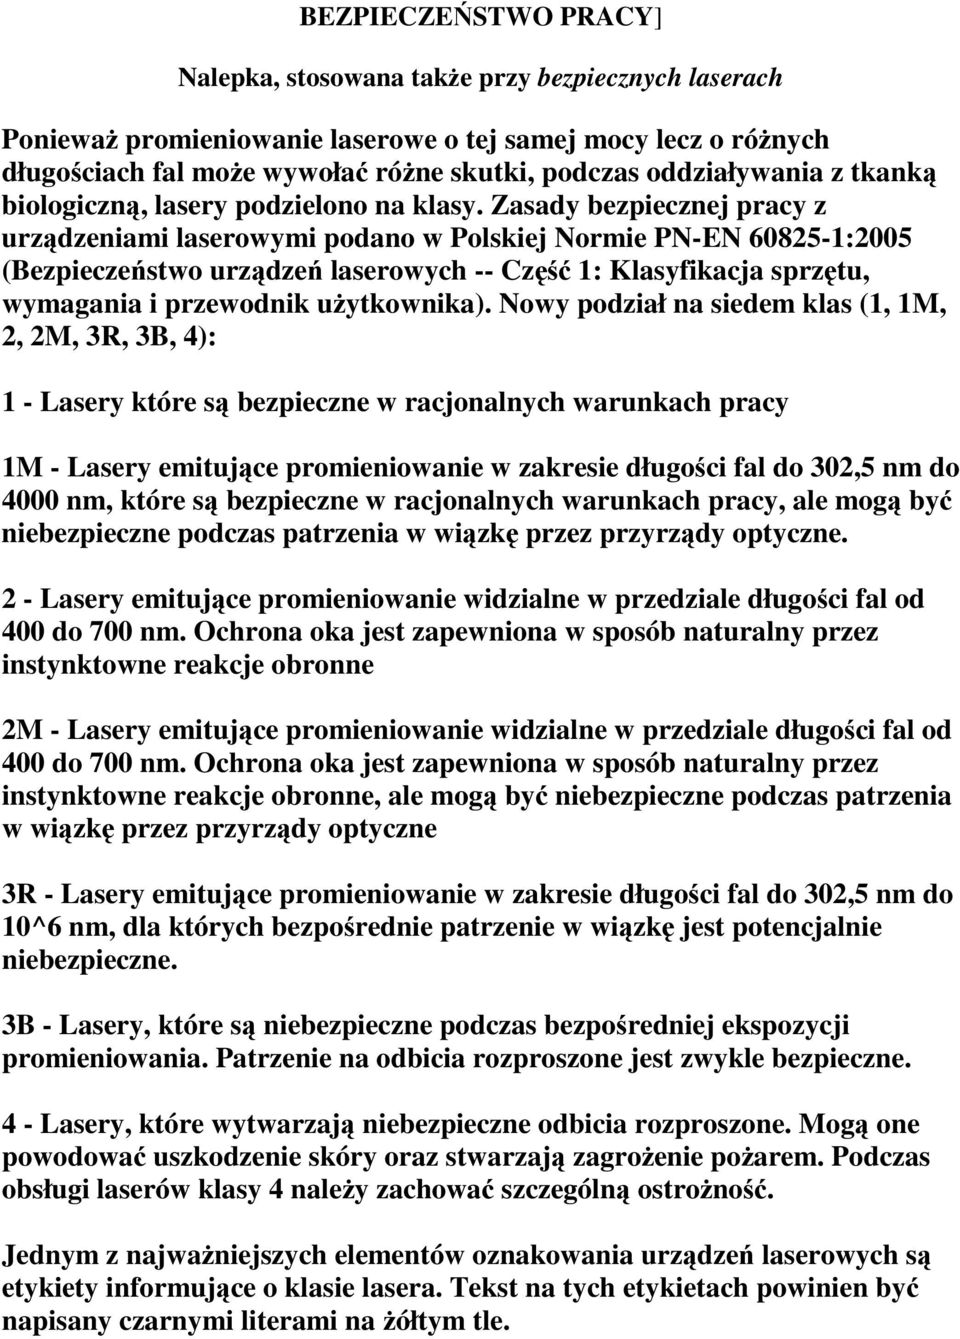 Zasady bezpiecznej pracy z urządzeniami laserowymi podano w Polskiej Normie PN-EN 60825-1:2005 (Bezpieczeństwo urządzeń laserowych -- Część 1: Klasyfikacja sprzętu, wymagania i przewodnik